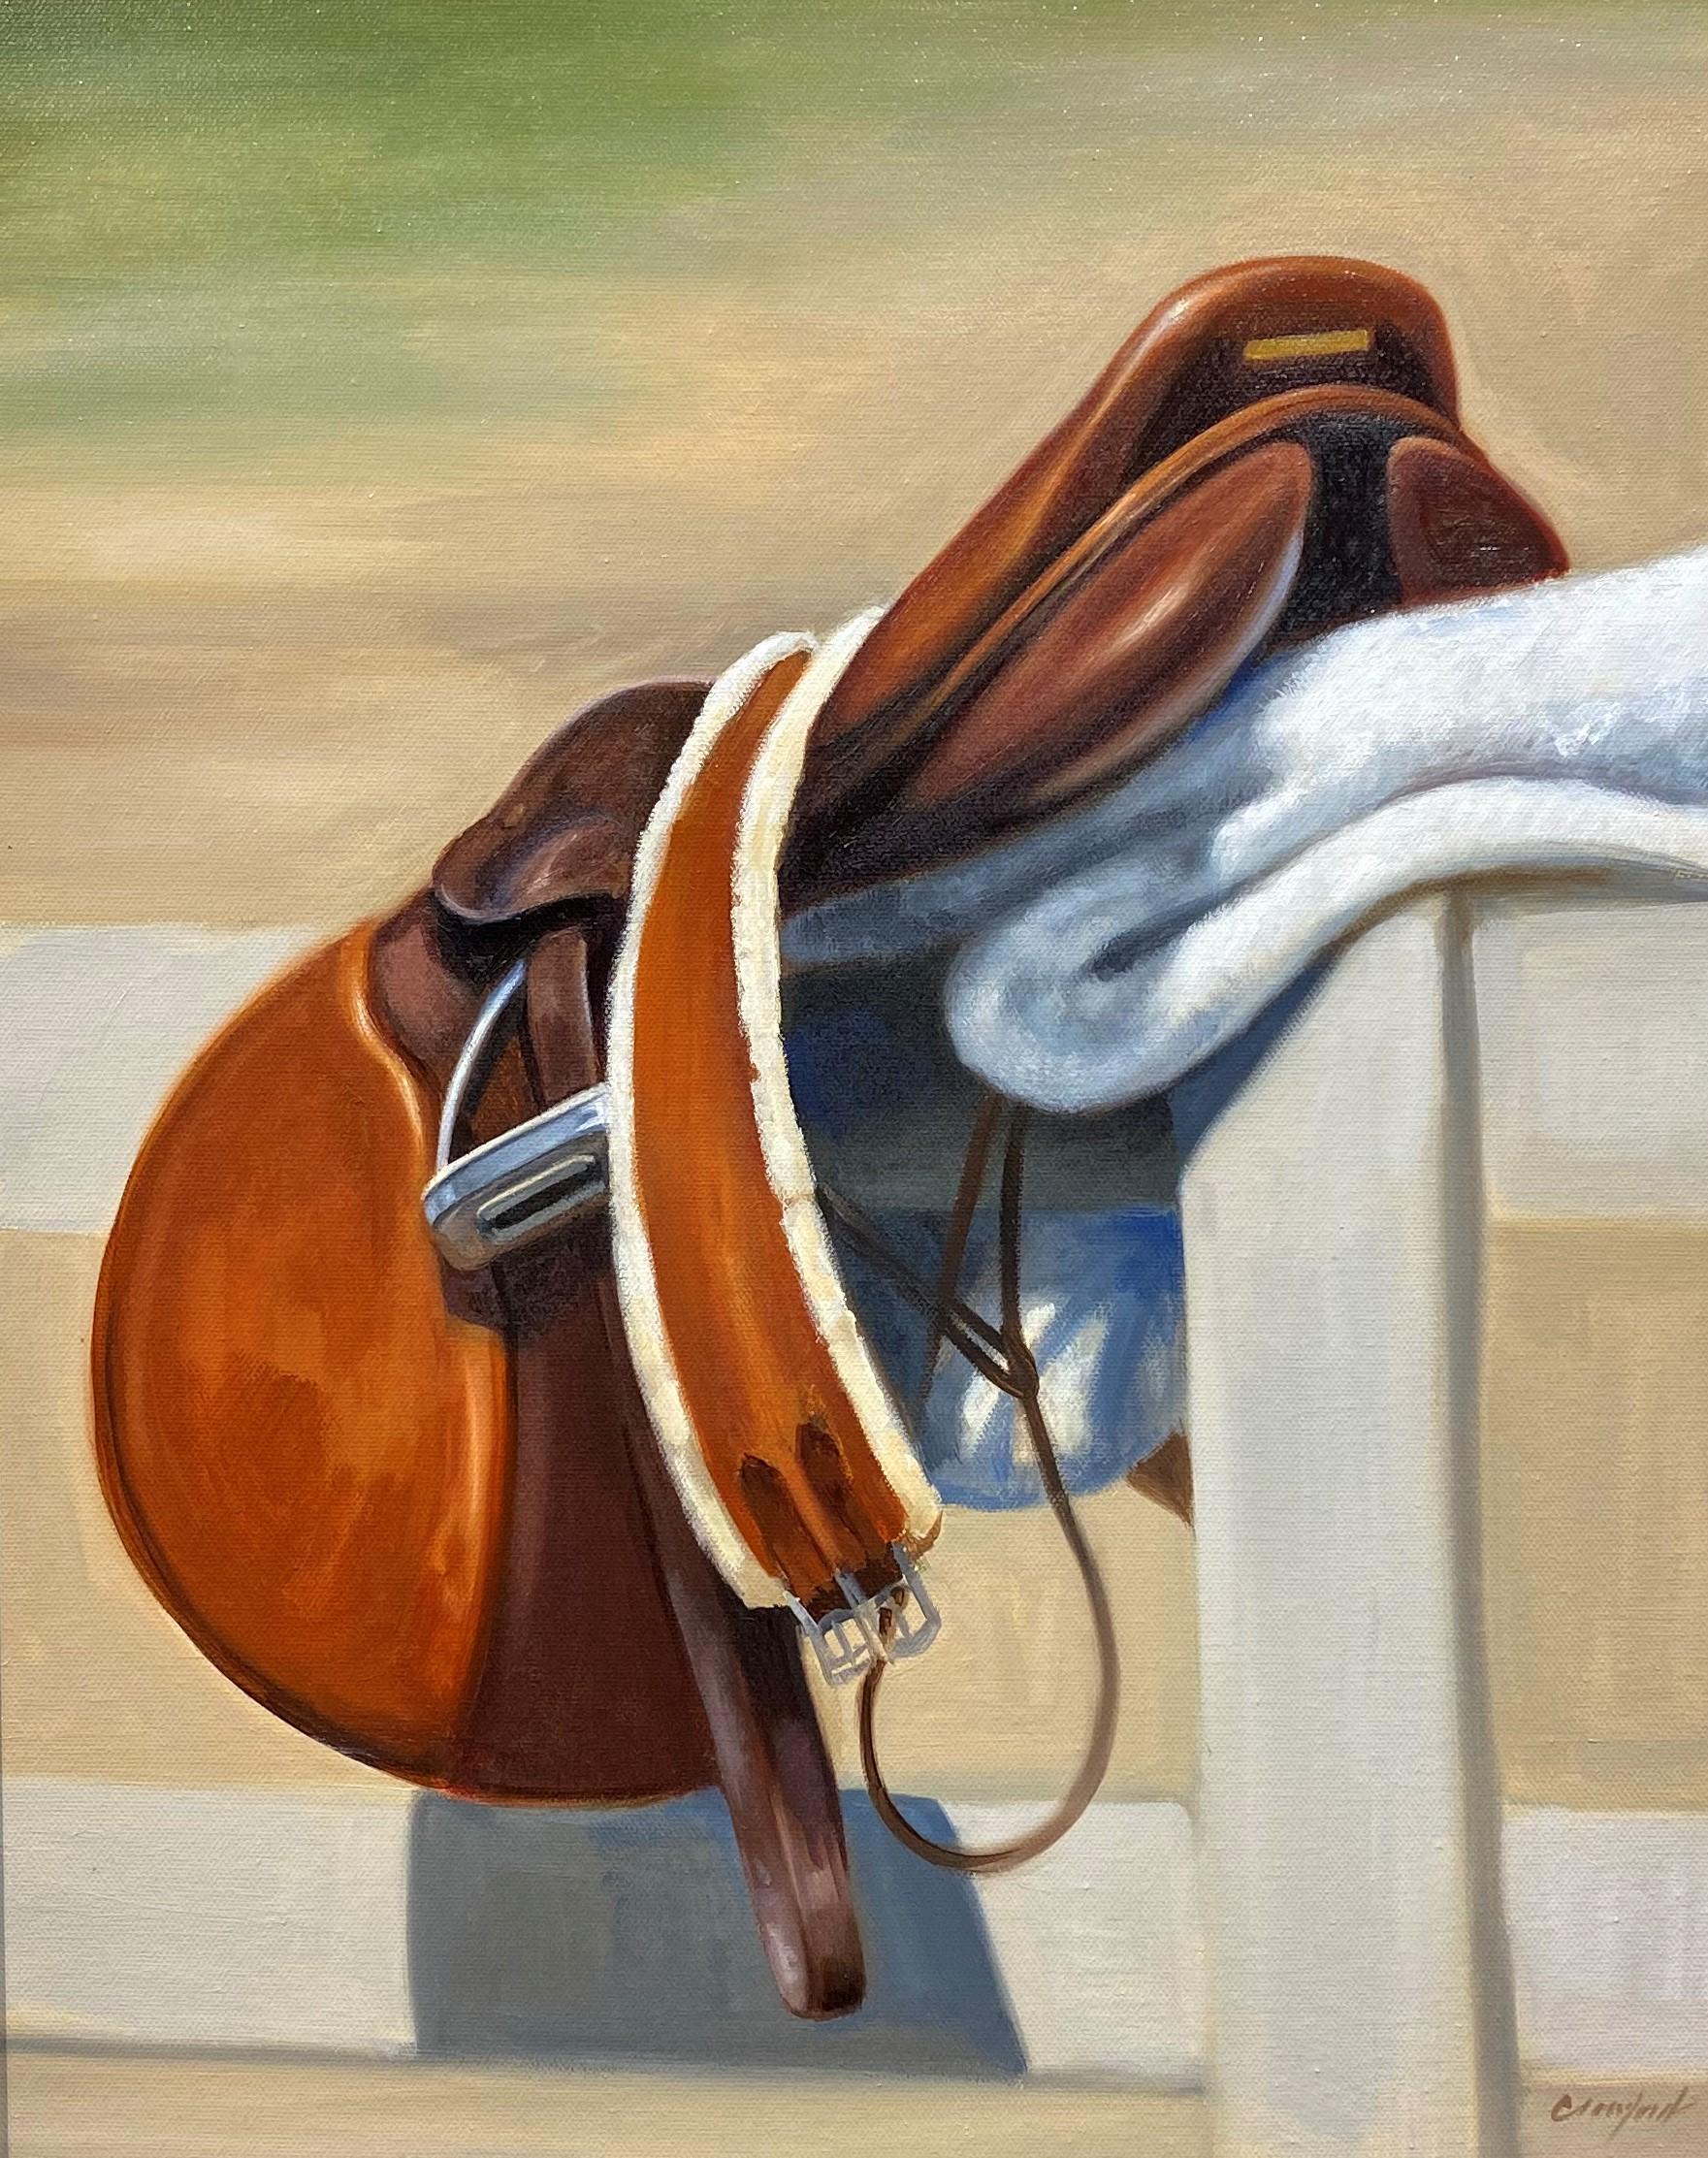 Janet Crawford, «ddle », peinture à l'huile sur toile « Tack » à cheval équestre, 20 x 16 cm